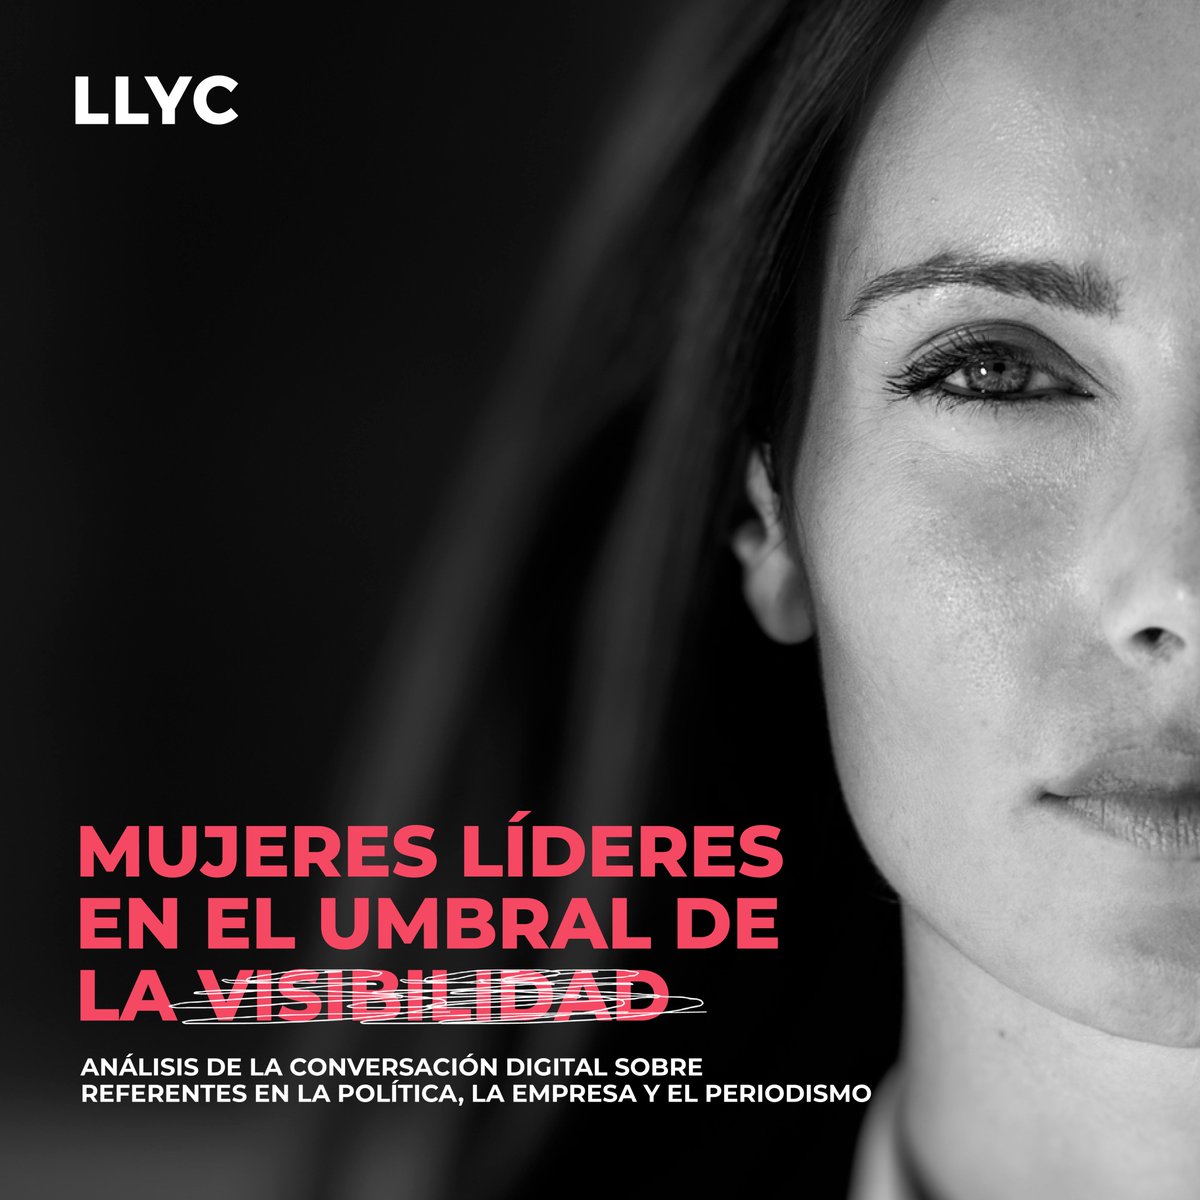 @LuciaValeroTV una recomendación de un excelente Informe #InvisibilidadMujer por si lo consideras de tu amable interés. Daría para un interesante debate, pedagógico y cívico. 
ideas.llorenteycuenca.com/2022/03/mujere…